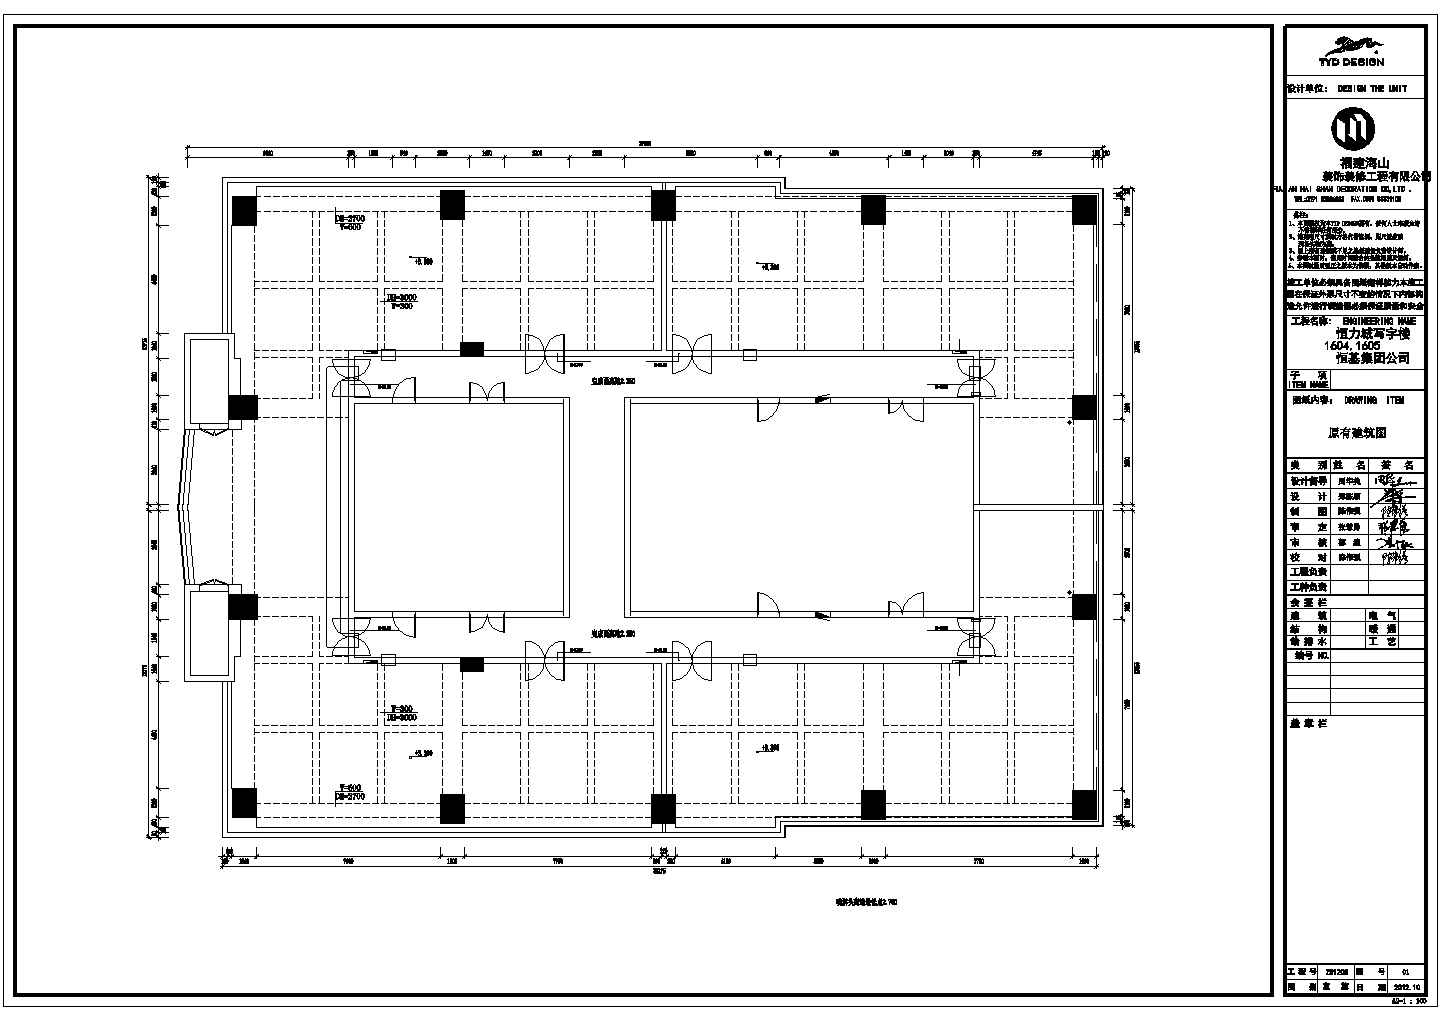 某福建恒基集团办公室混搭风格CAD室内装修设计施工图（含各模块平立面图和效果图）